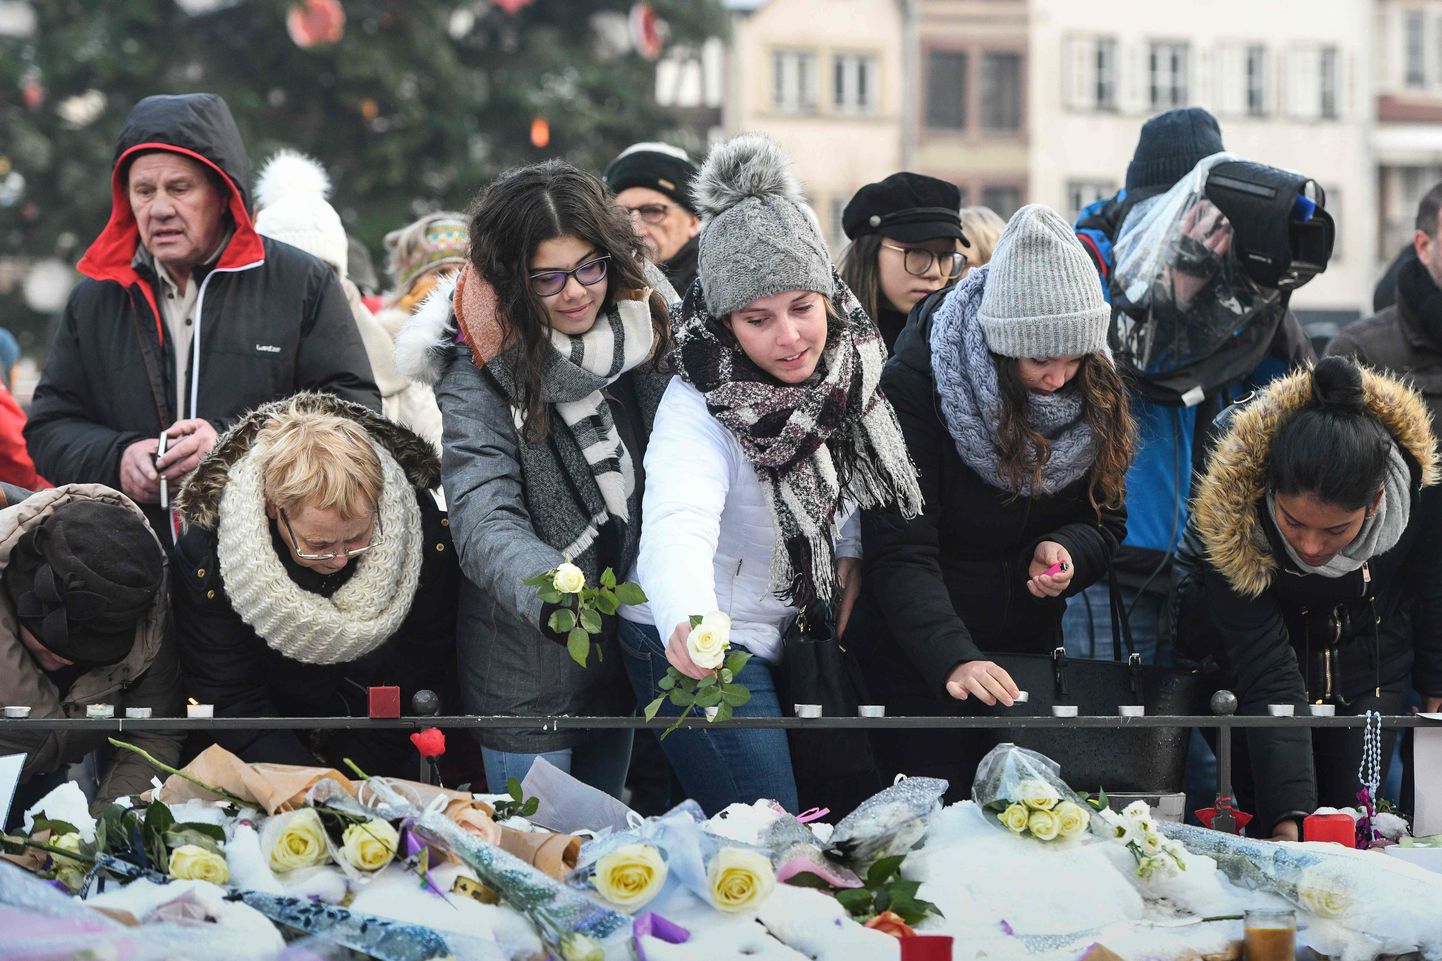 Inimesed asetamas terrorirünnaku ohvrite mäletuseks lilli ja küünlaid Kleberi väljakule Strasbourgis.